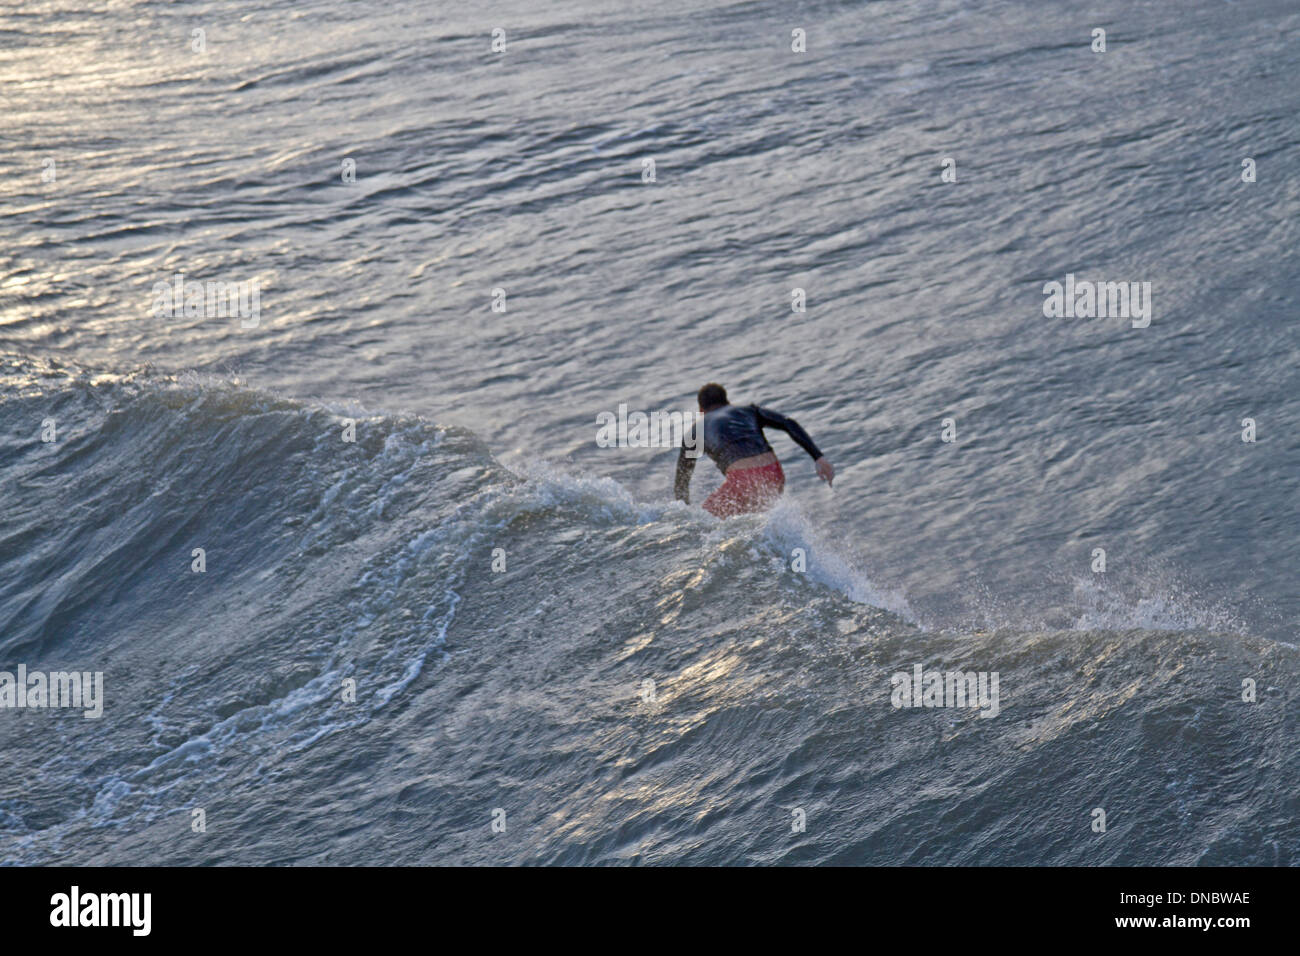 Folly Beach, South Carolina, USA - 25. Oktober 2012: Surfer reitet eine riesige Welle von Hurrikan Sandy von hinten aus gesehen Stockfoto